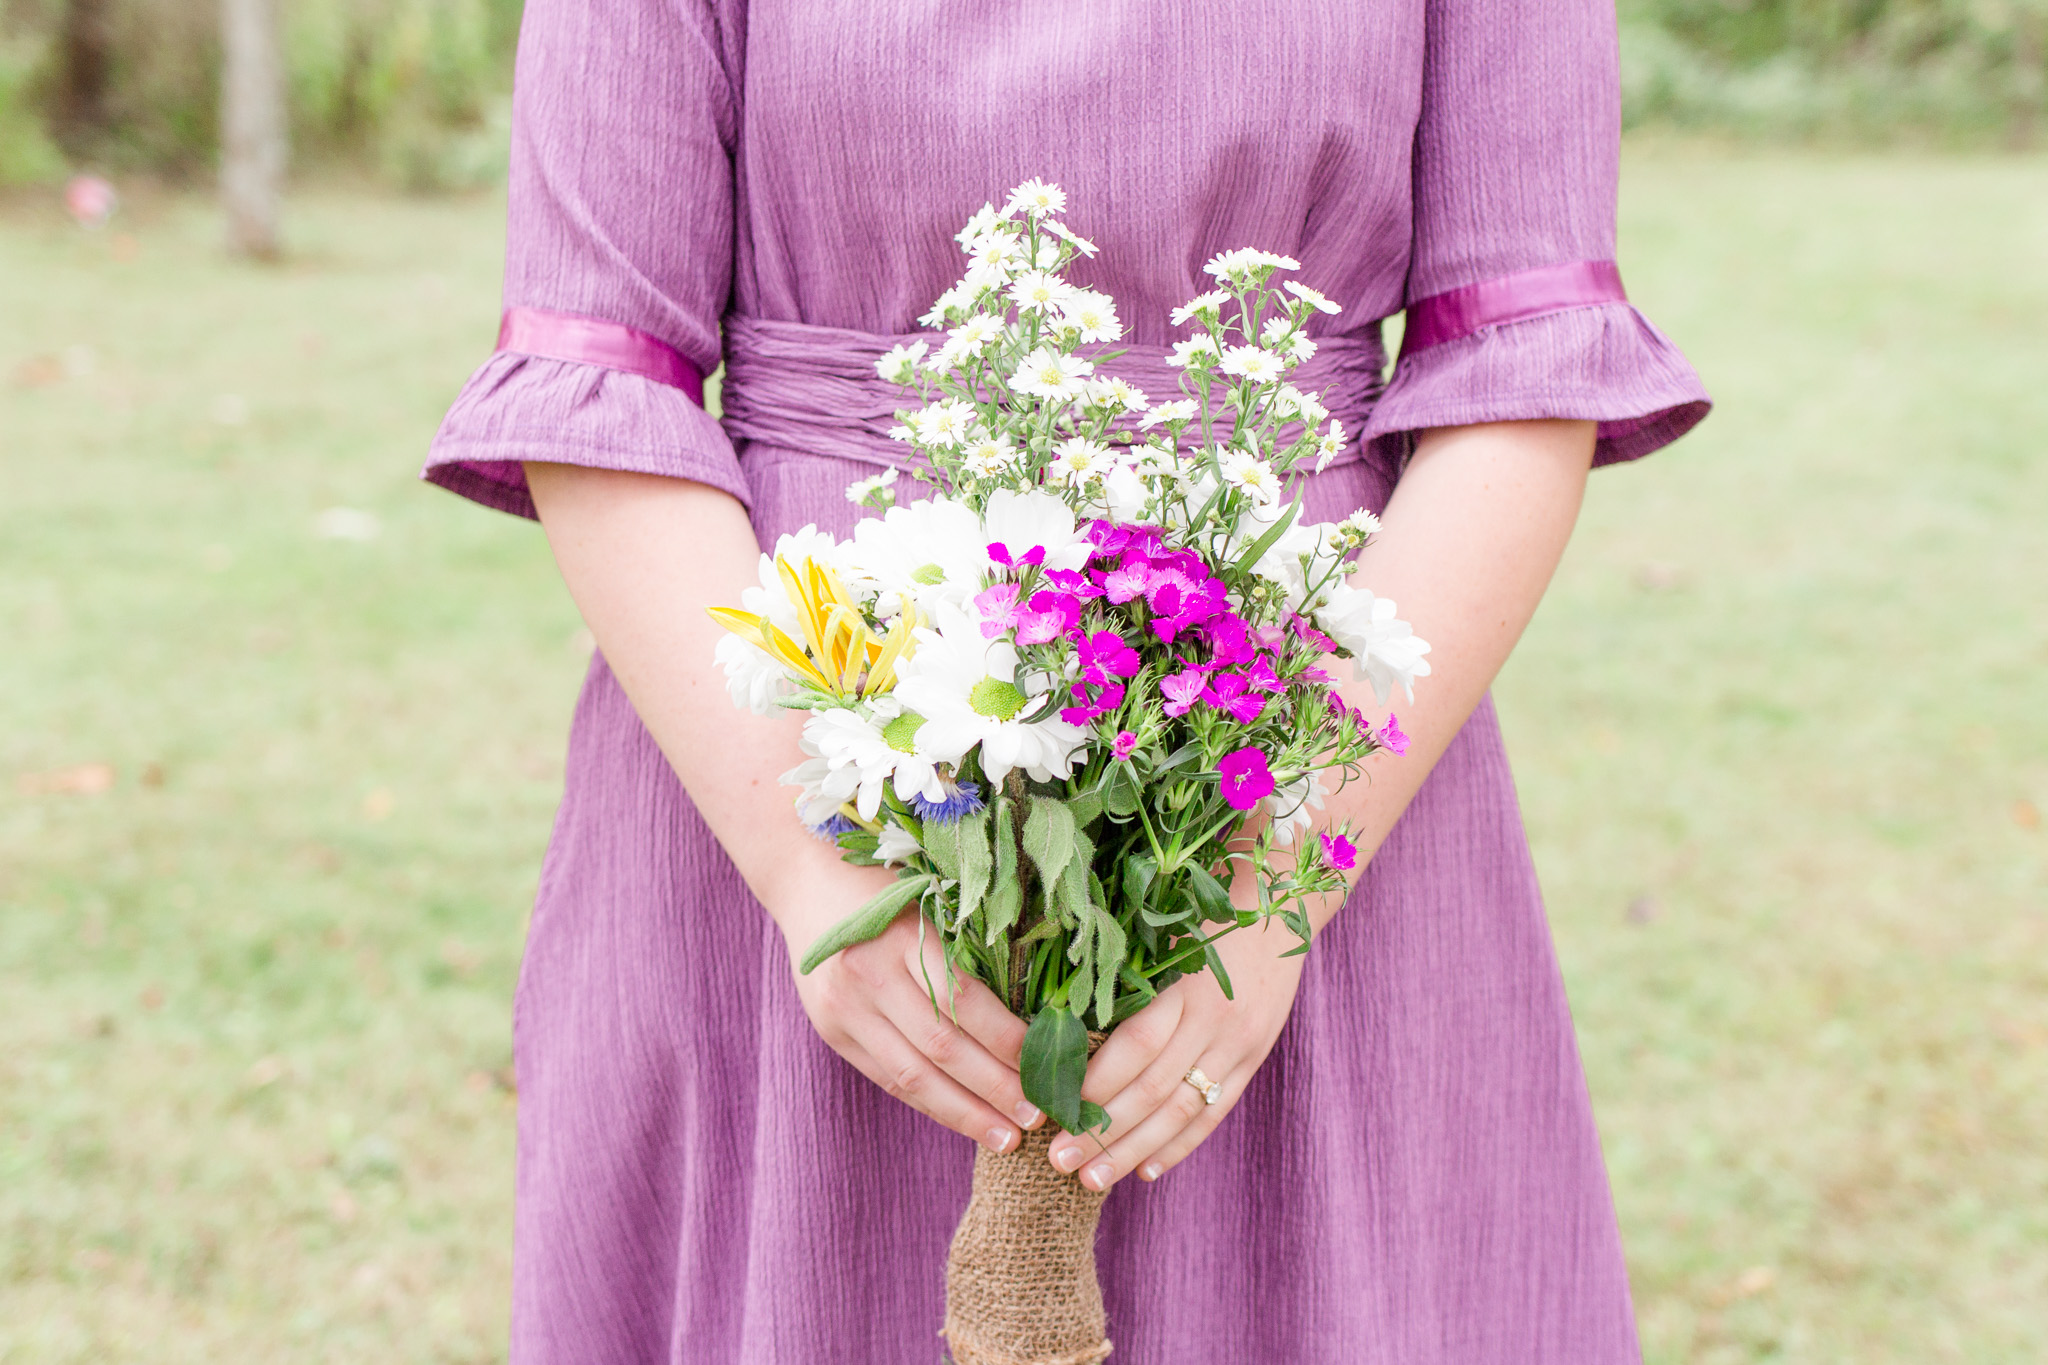 Purple bridesmaid dress with wild flower wedding bouquet